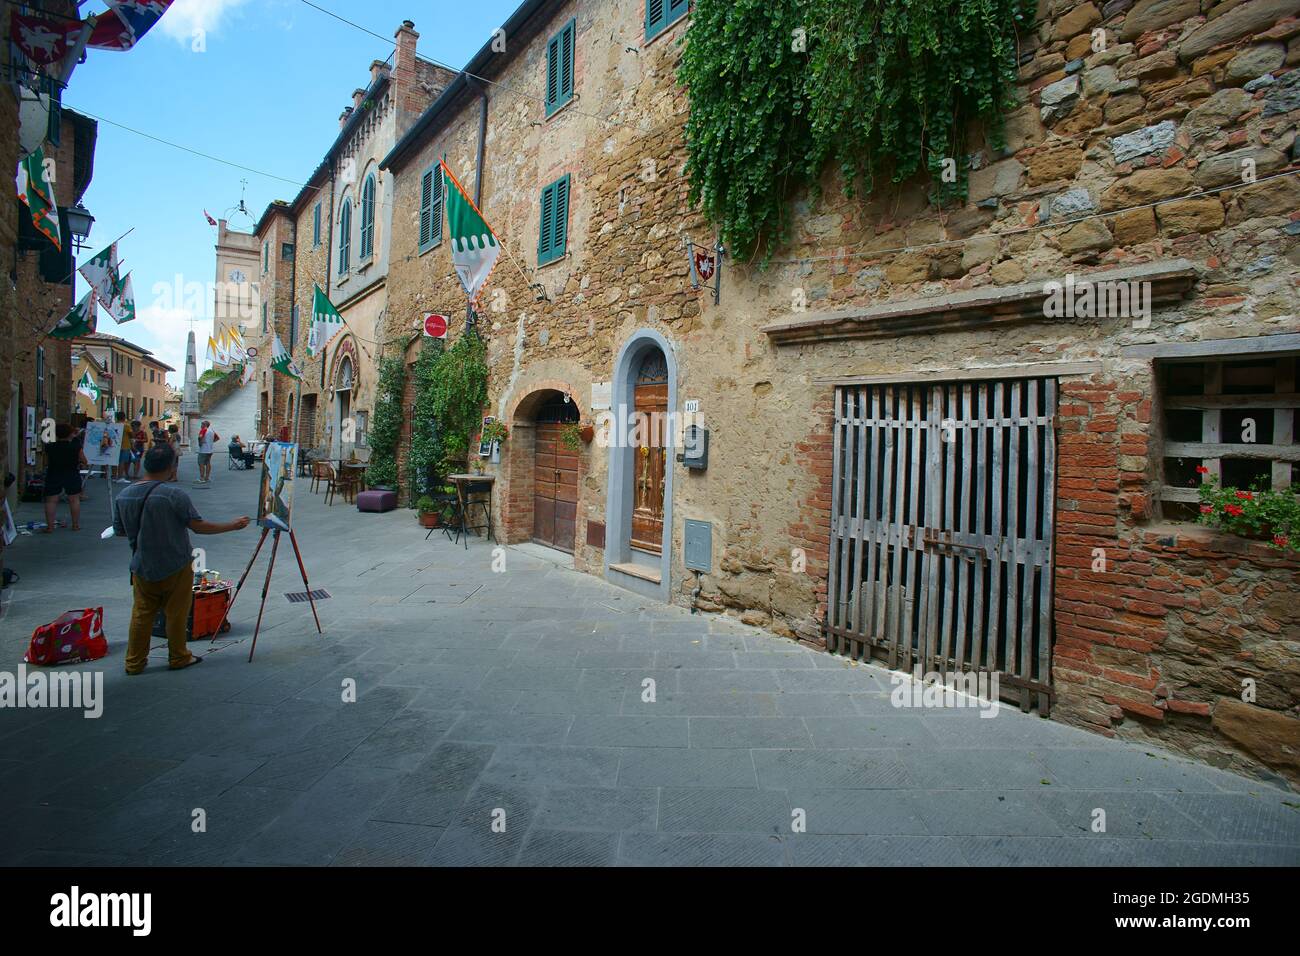 Concorso di pittura intorno al paese di Montisi in Toscana, provincia di Siena, Italia Foto Stock